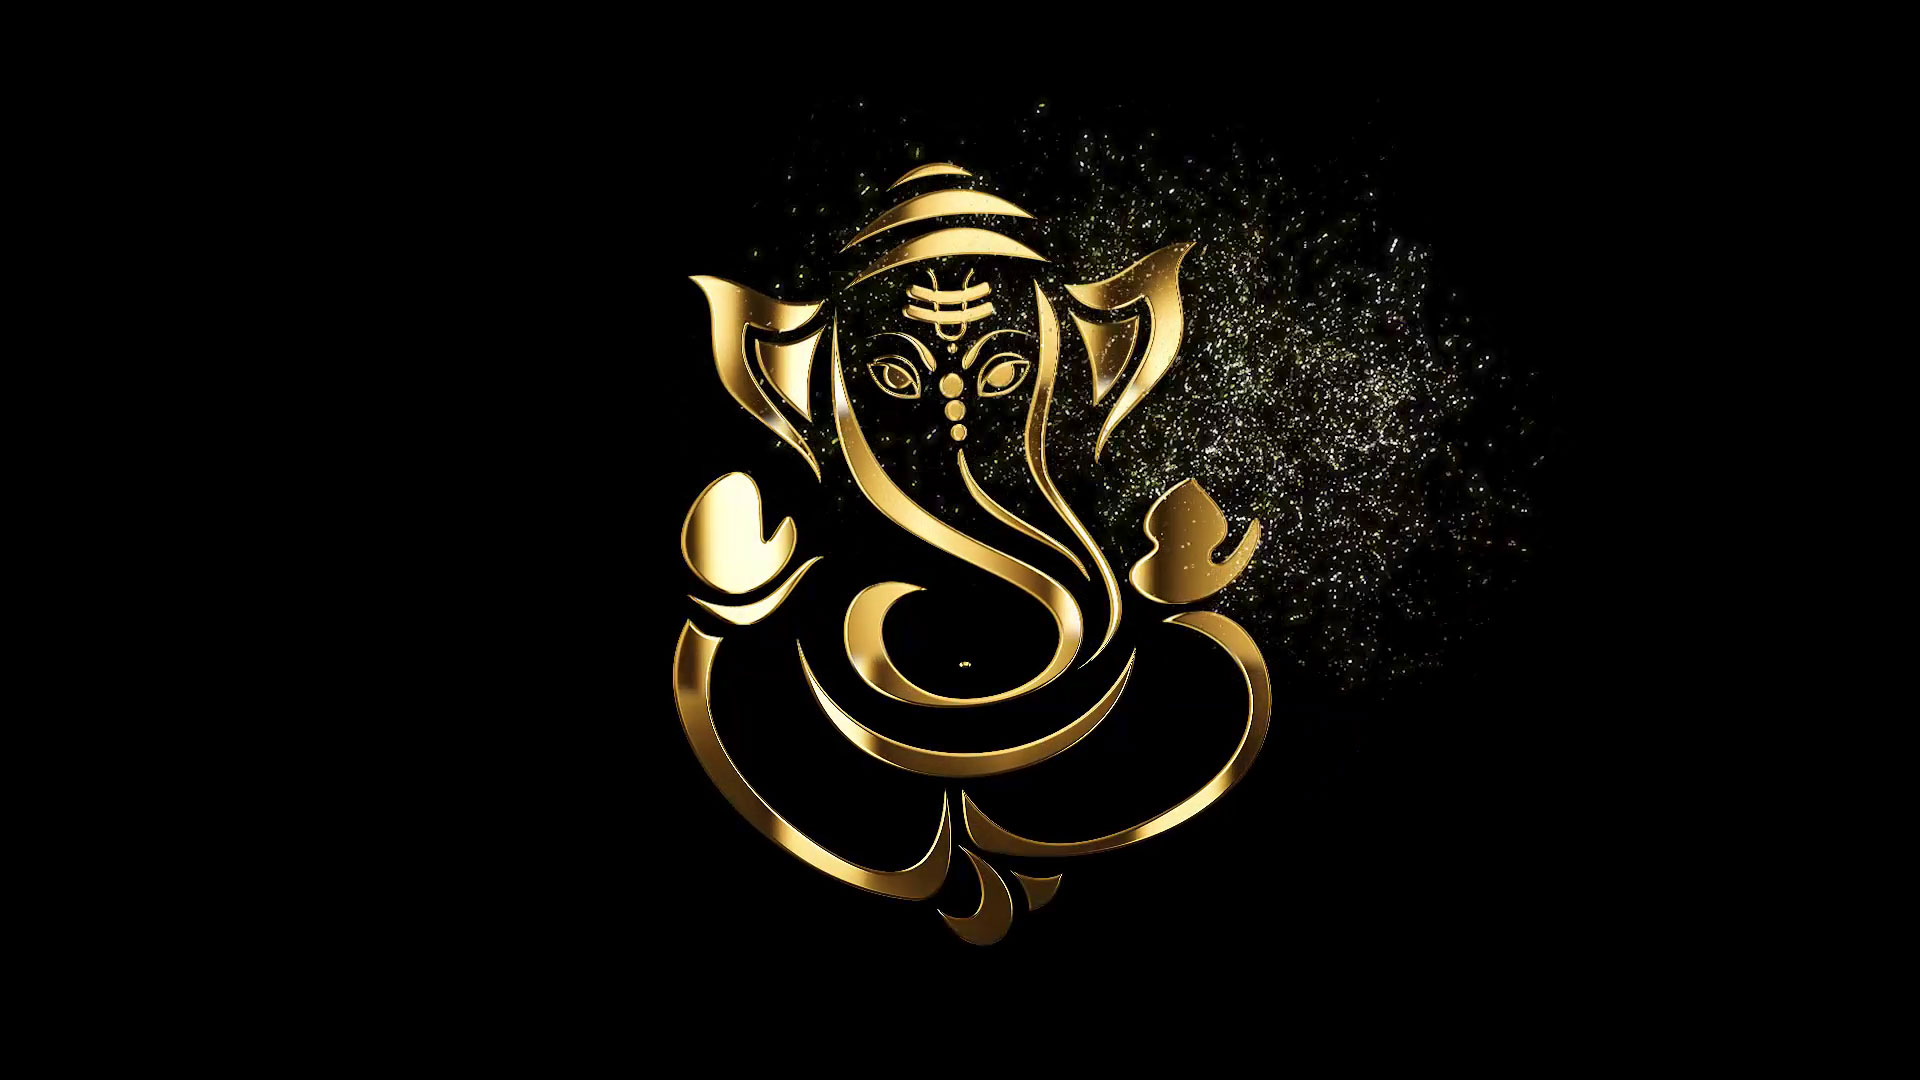 Ganesha luôn tạo ra một sự tập trung và phong cách độc đáo khi được hiển thị trên màn hình của bạn. Hãy truy cập vào hình ảnh liên quan để nhận lời mời đến với thế giới đầy màu sắc của Ganesha và cùng khám phá những điều thú vị.